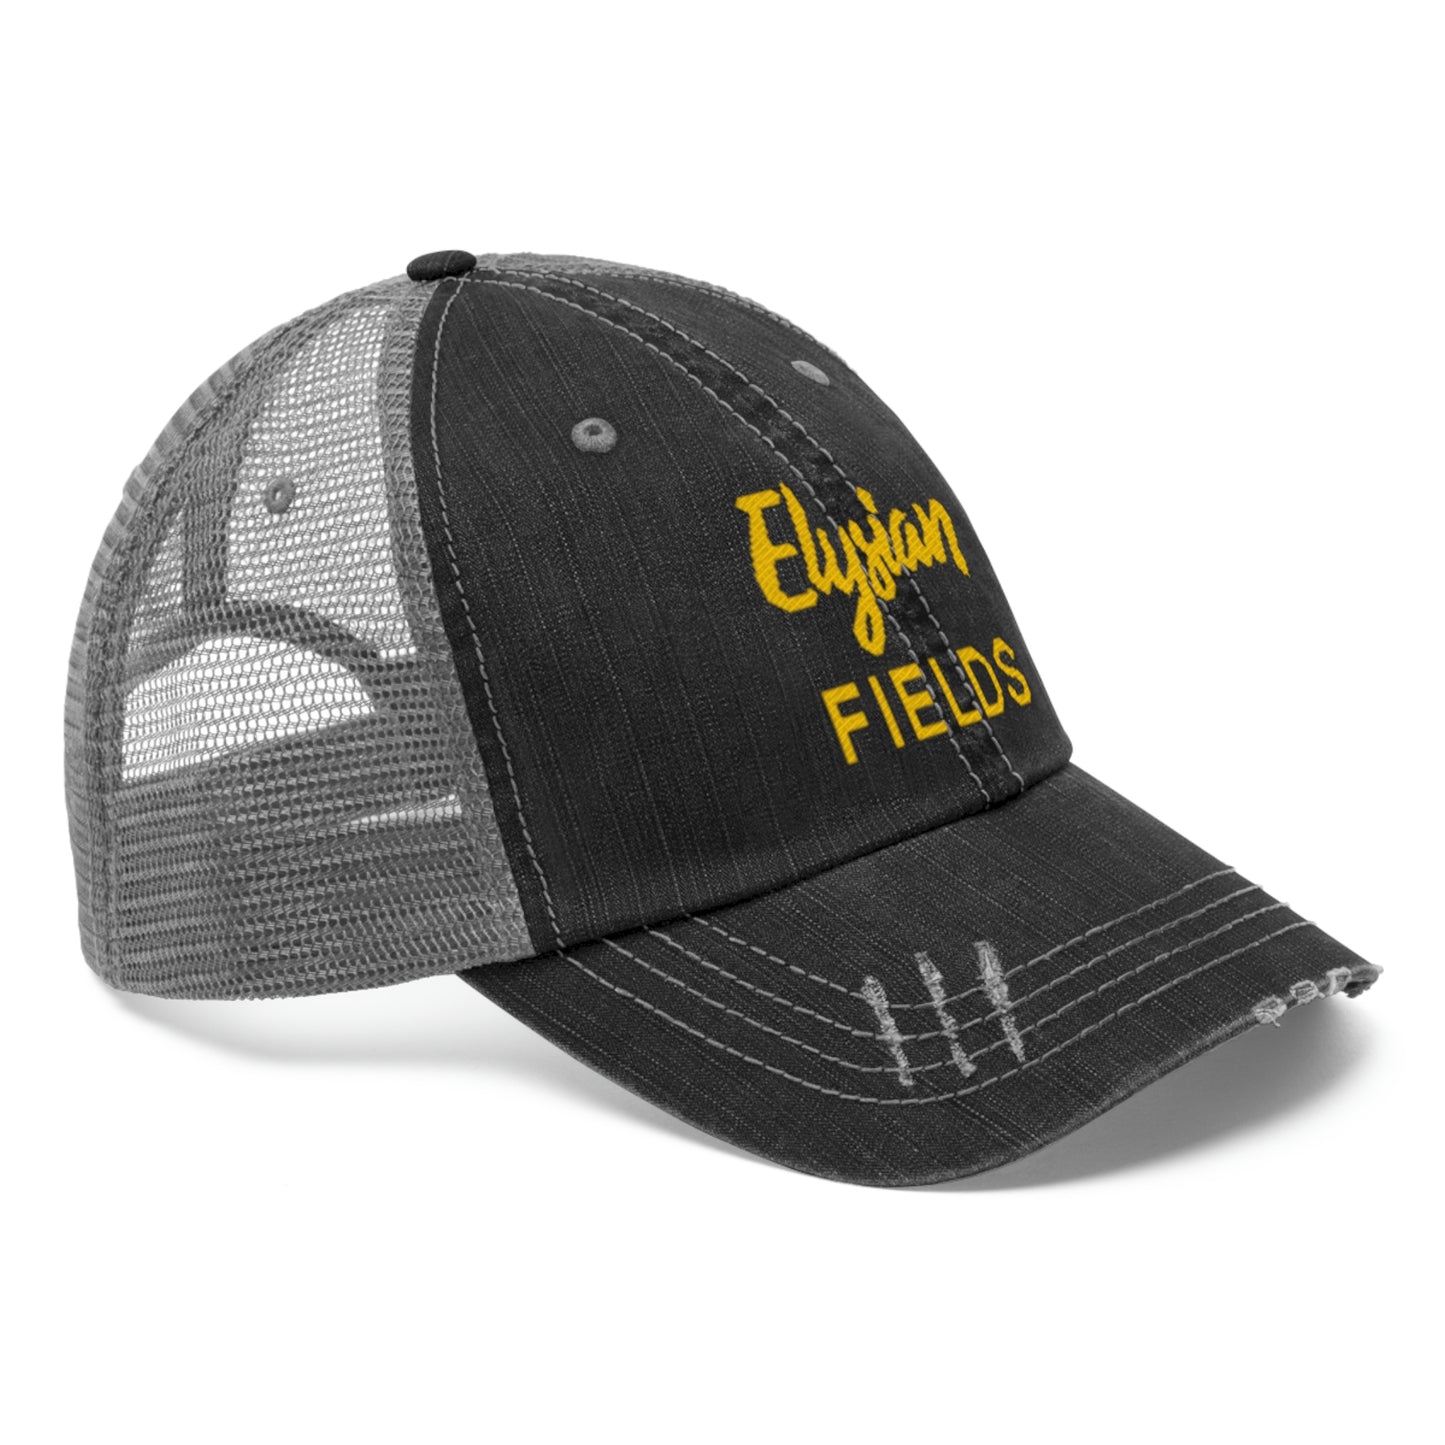 Elysian Fields - Unisex Trucker Hat